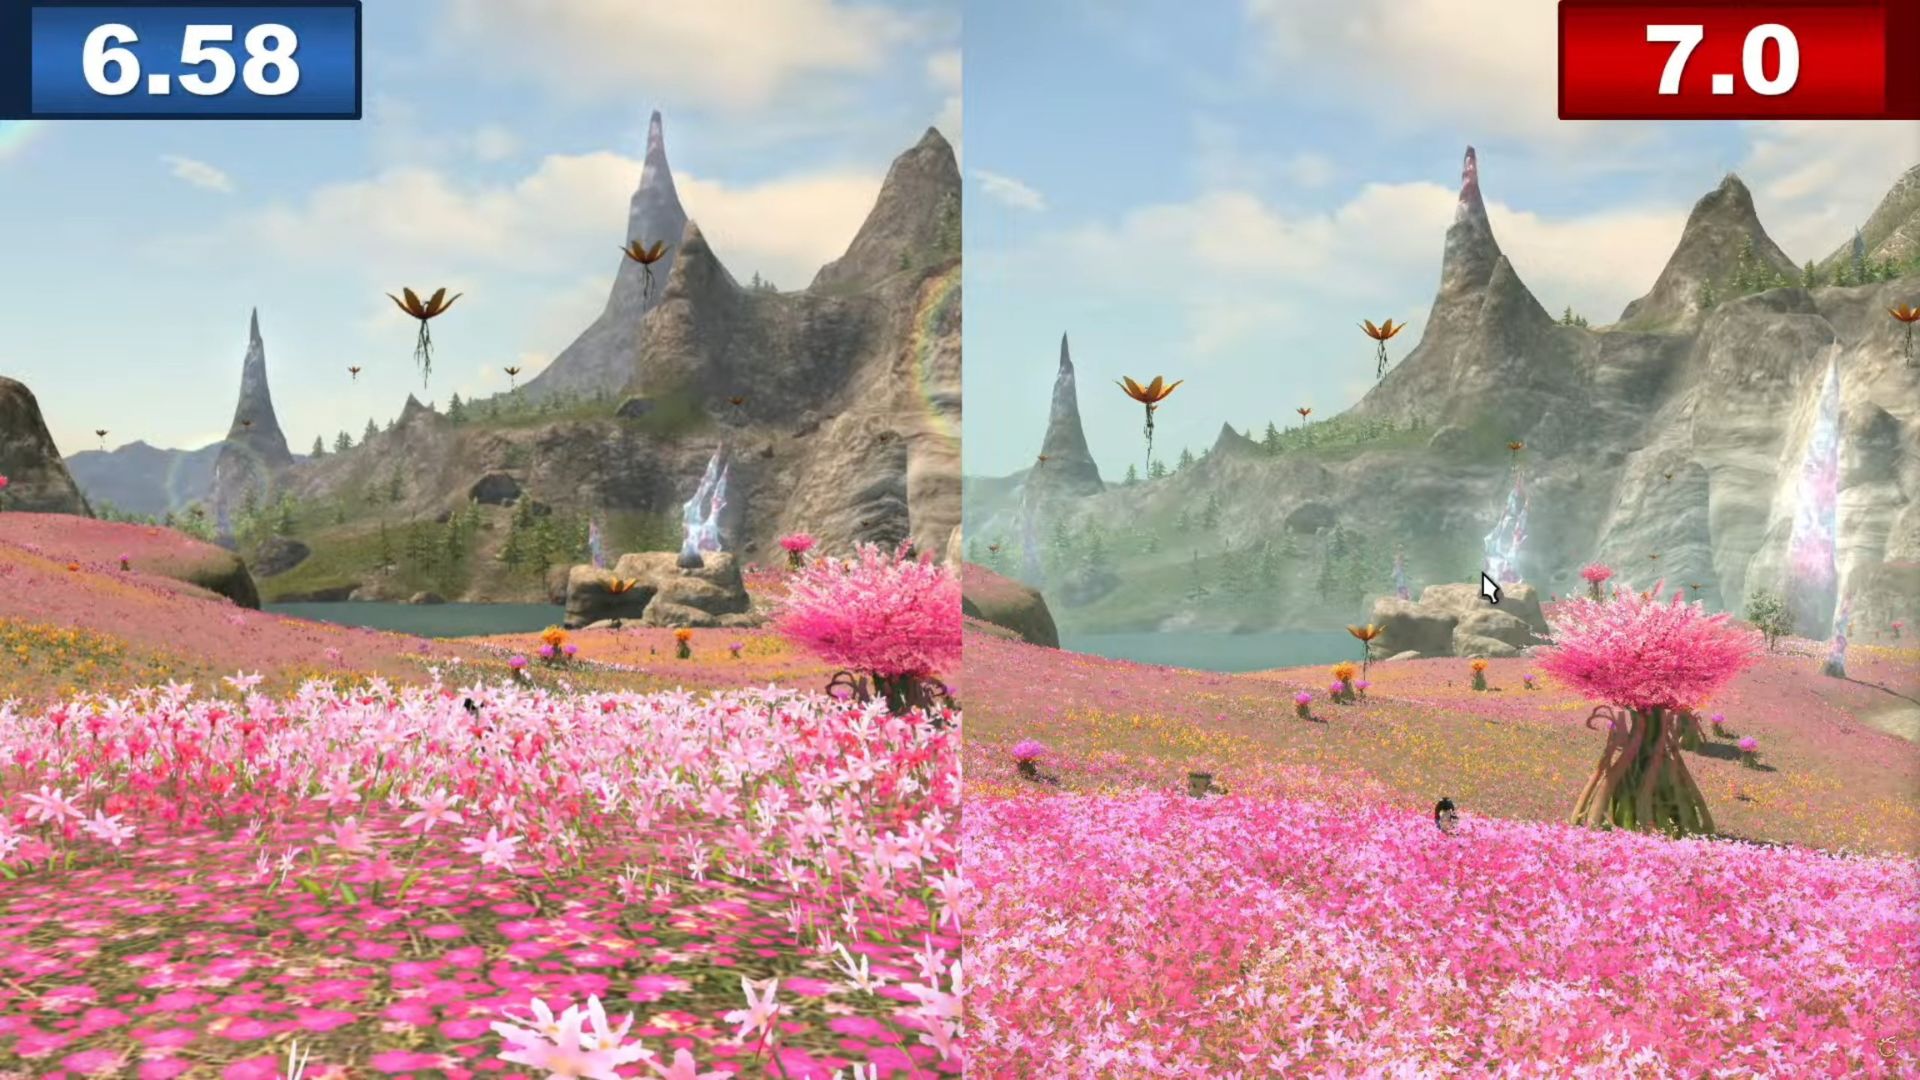 Benchmark Final Fantasy 14 Dawntrail: due scatti di campi di fiori rosa, quello a destra è di qualità migliore rispetto a quello a sinistra